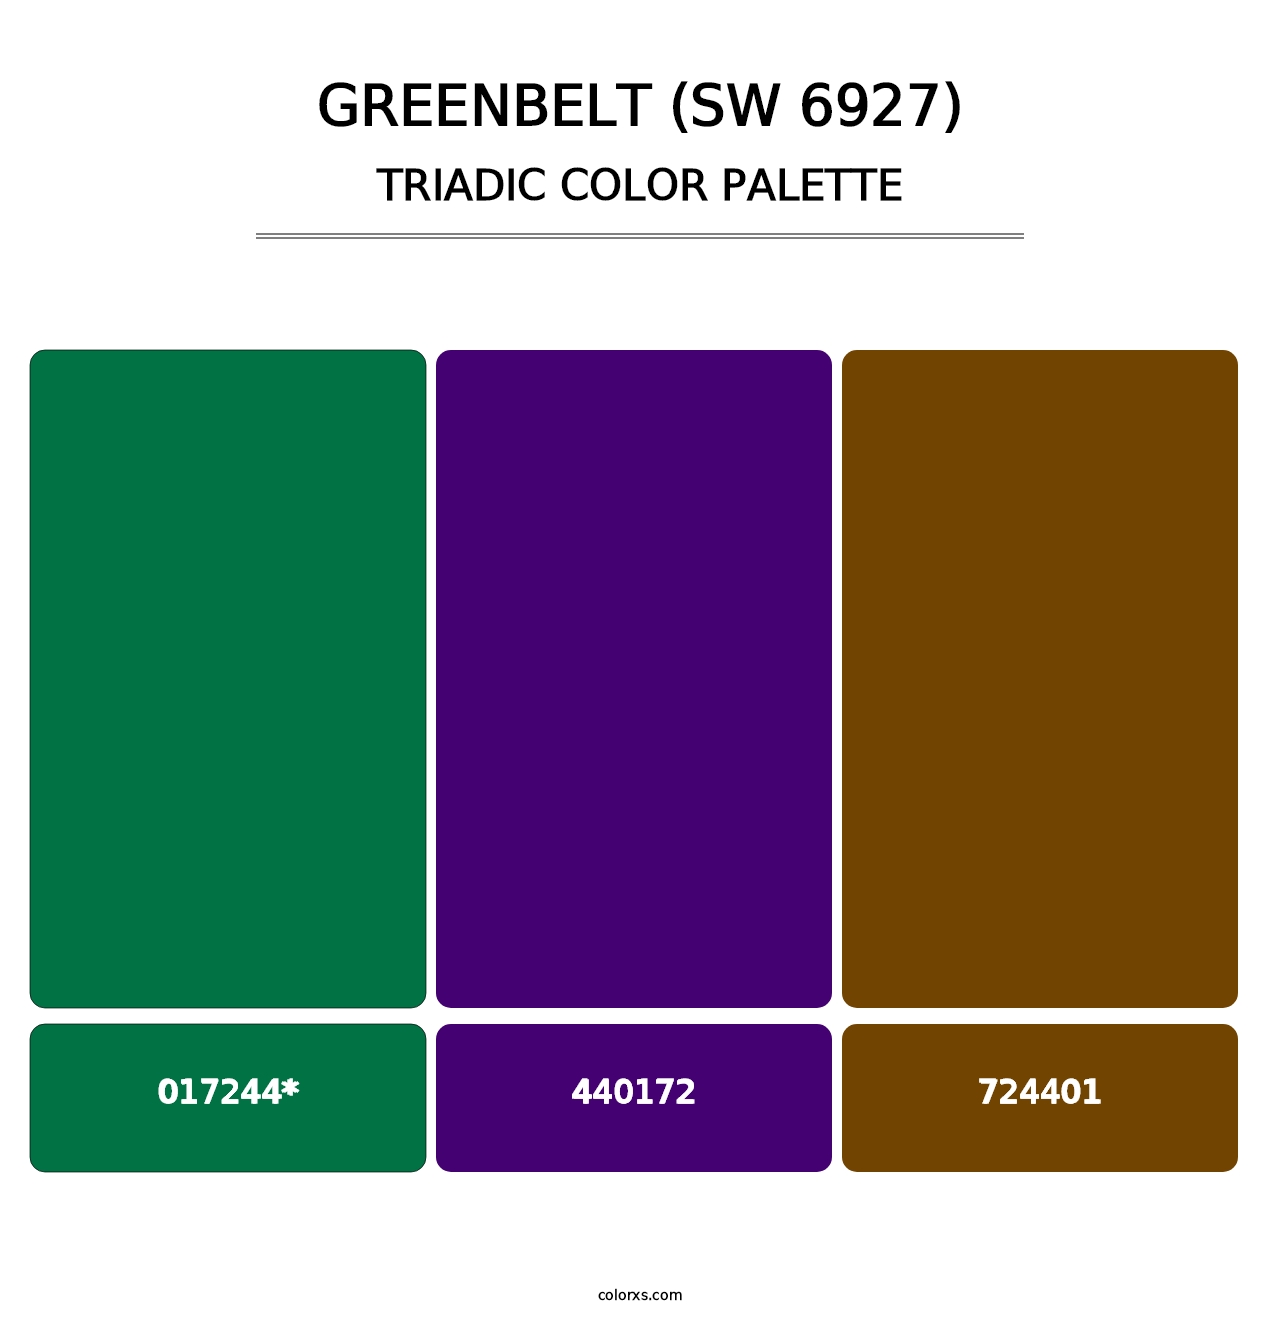 Greenbelt (SW 6927) - Triadic Color Palette